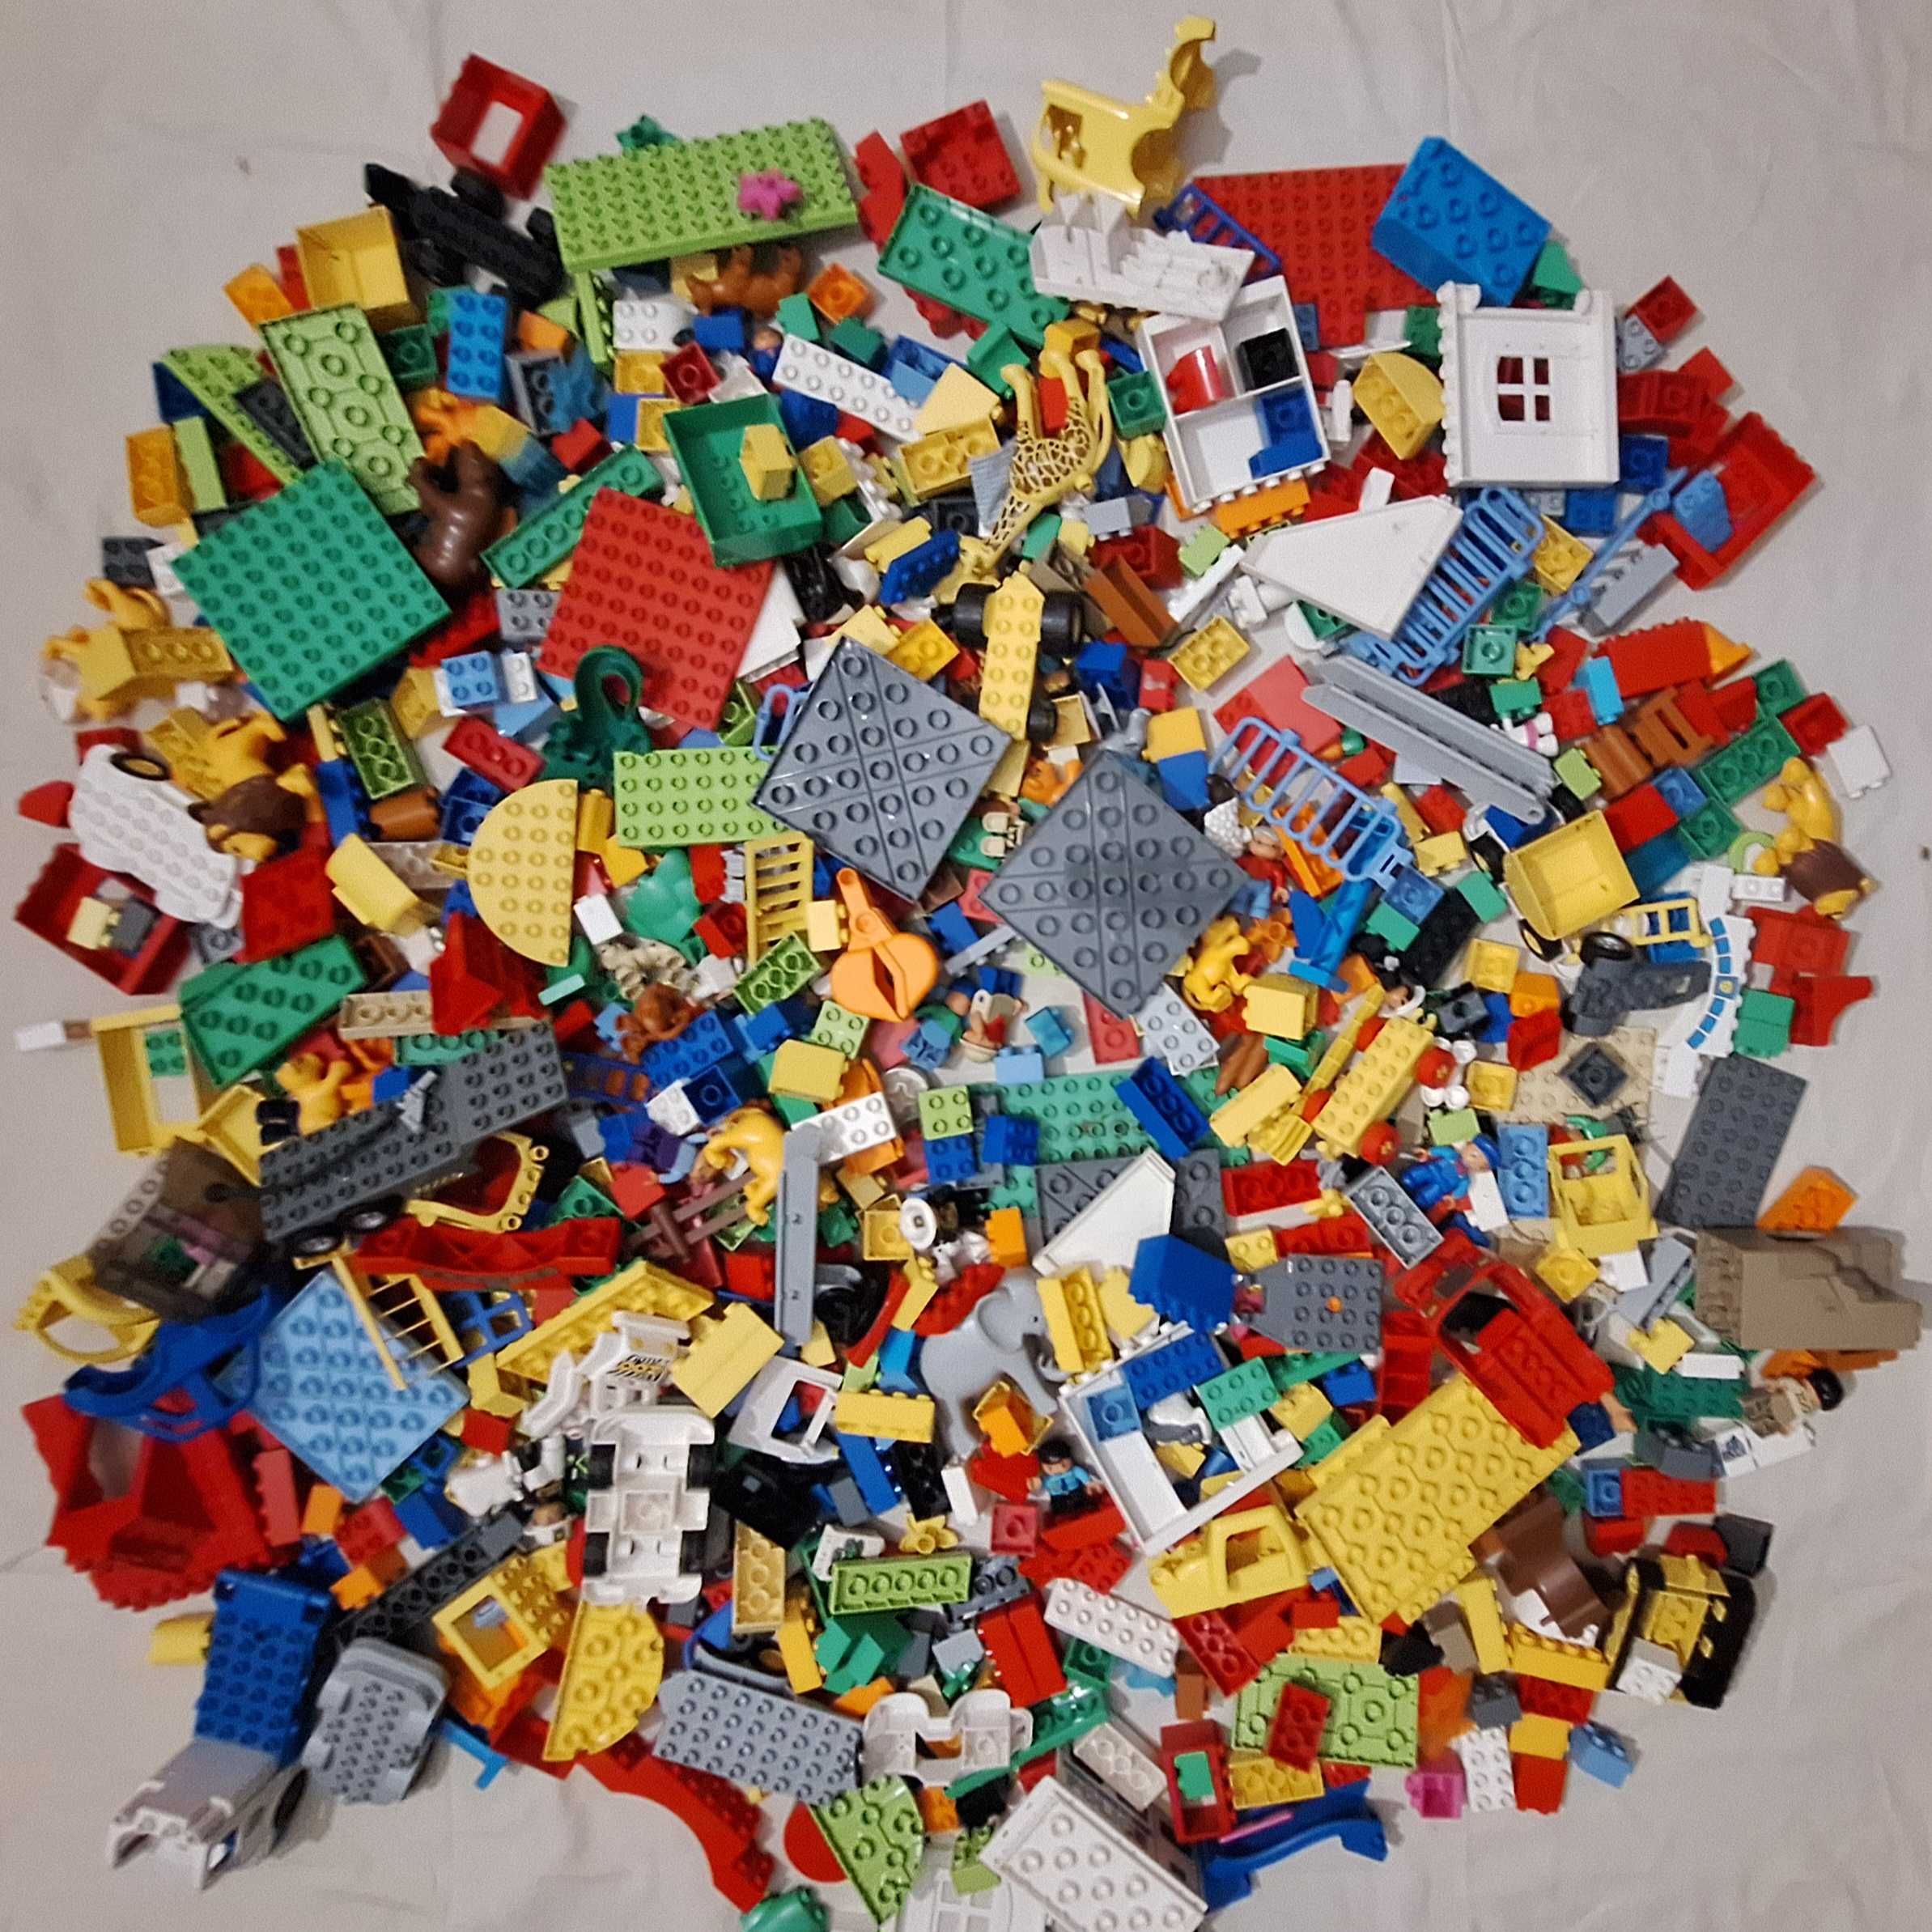 Klocki LEGO Duplo 11,5kg (mix, używane)